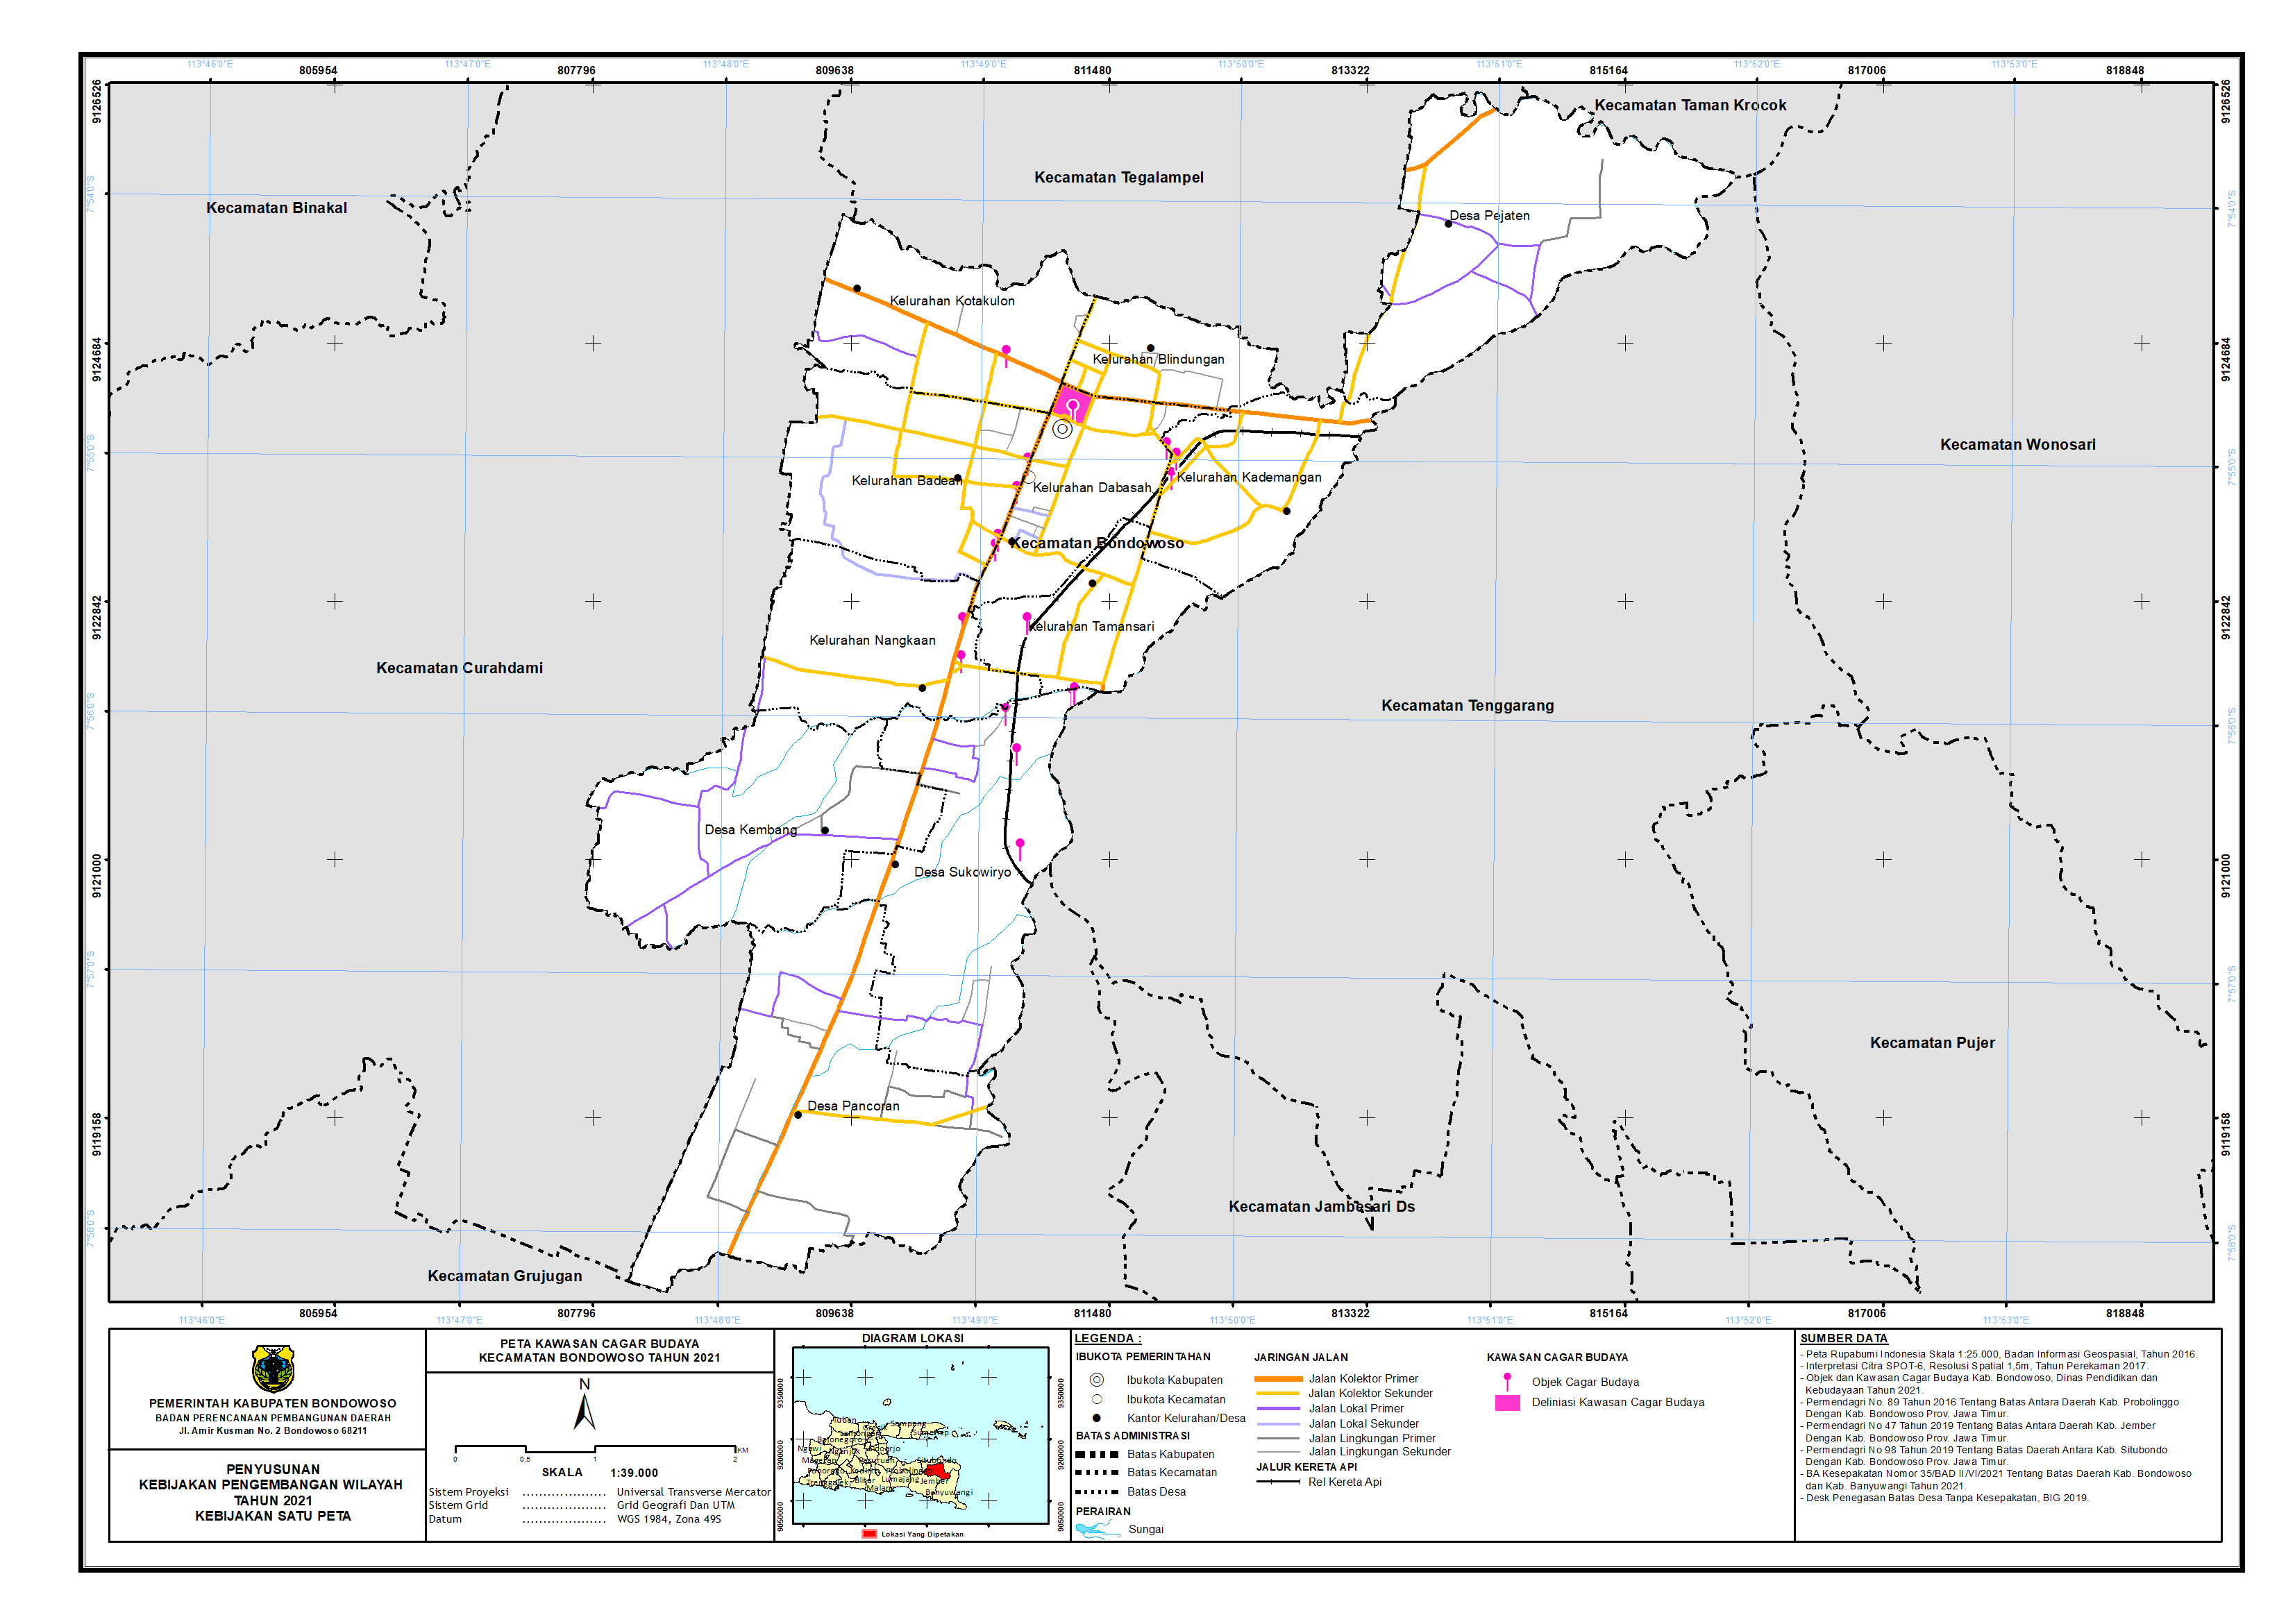 Peta Kawasan Cagar Budaya Kecamatan Bondowoso.png